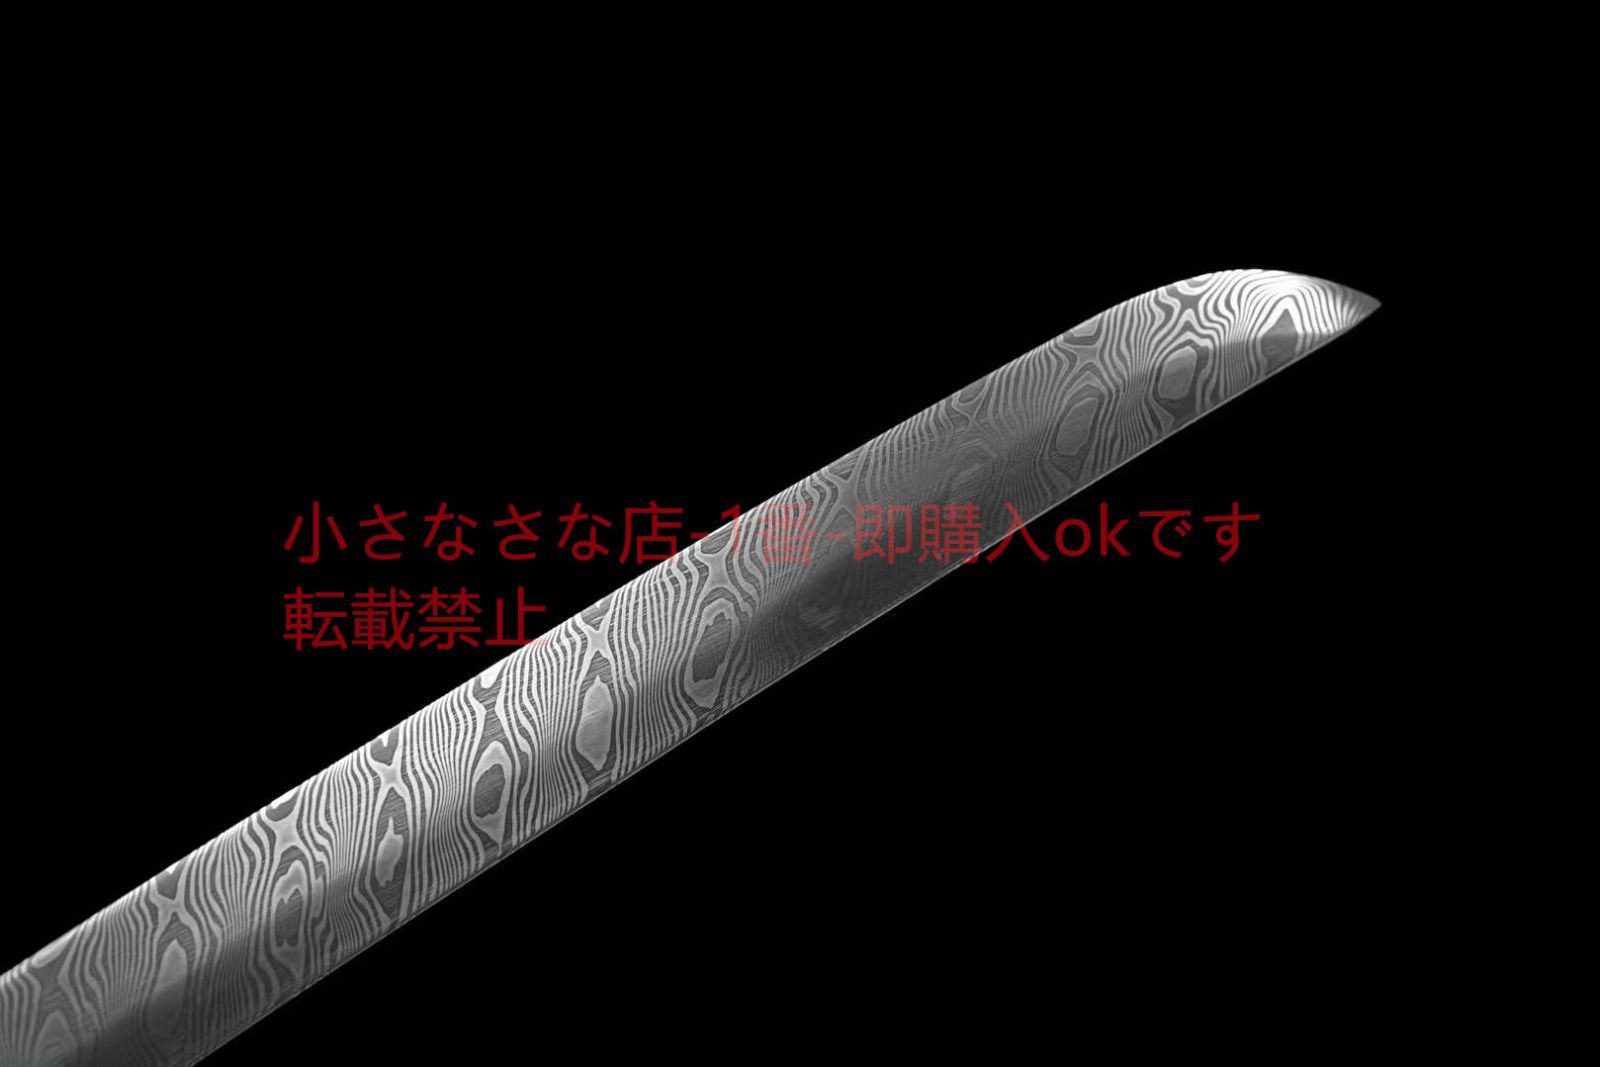 自製鋼武士刀【ミモザ】武具 刀装具 日本刀 模造刀 居合刀 - メルカリ